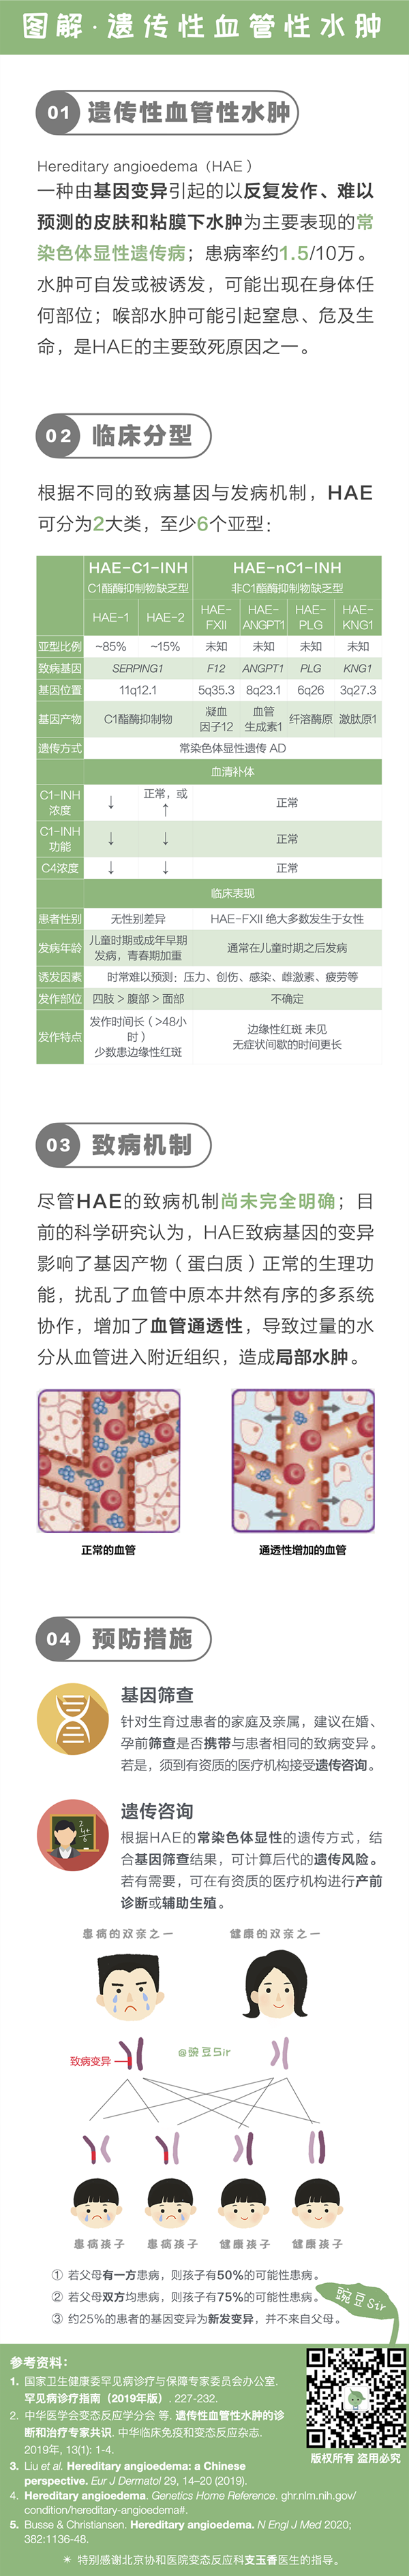 HEA-图解疾病-12.png